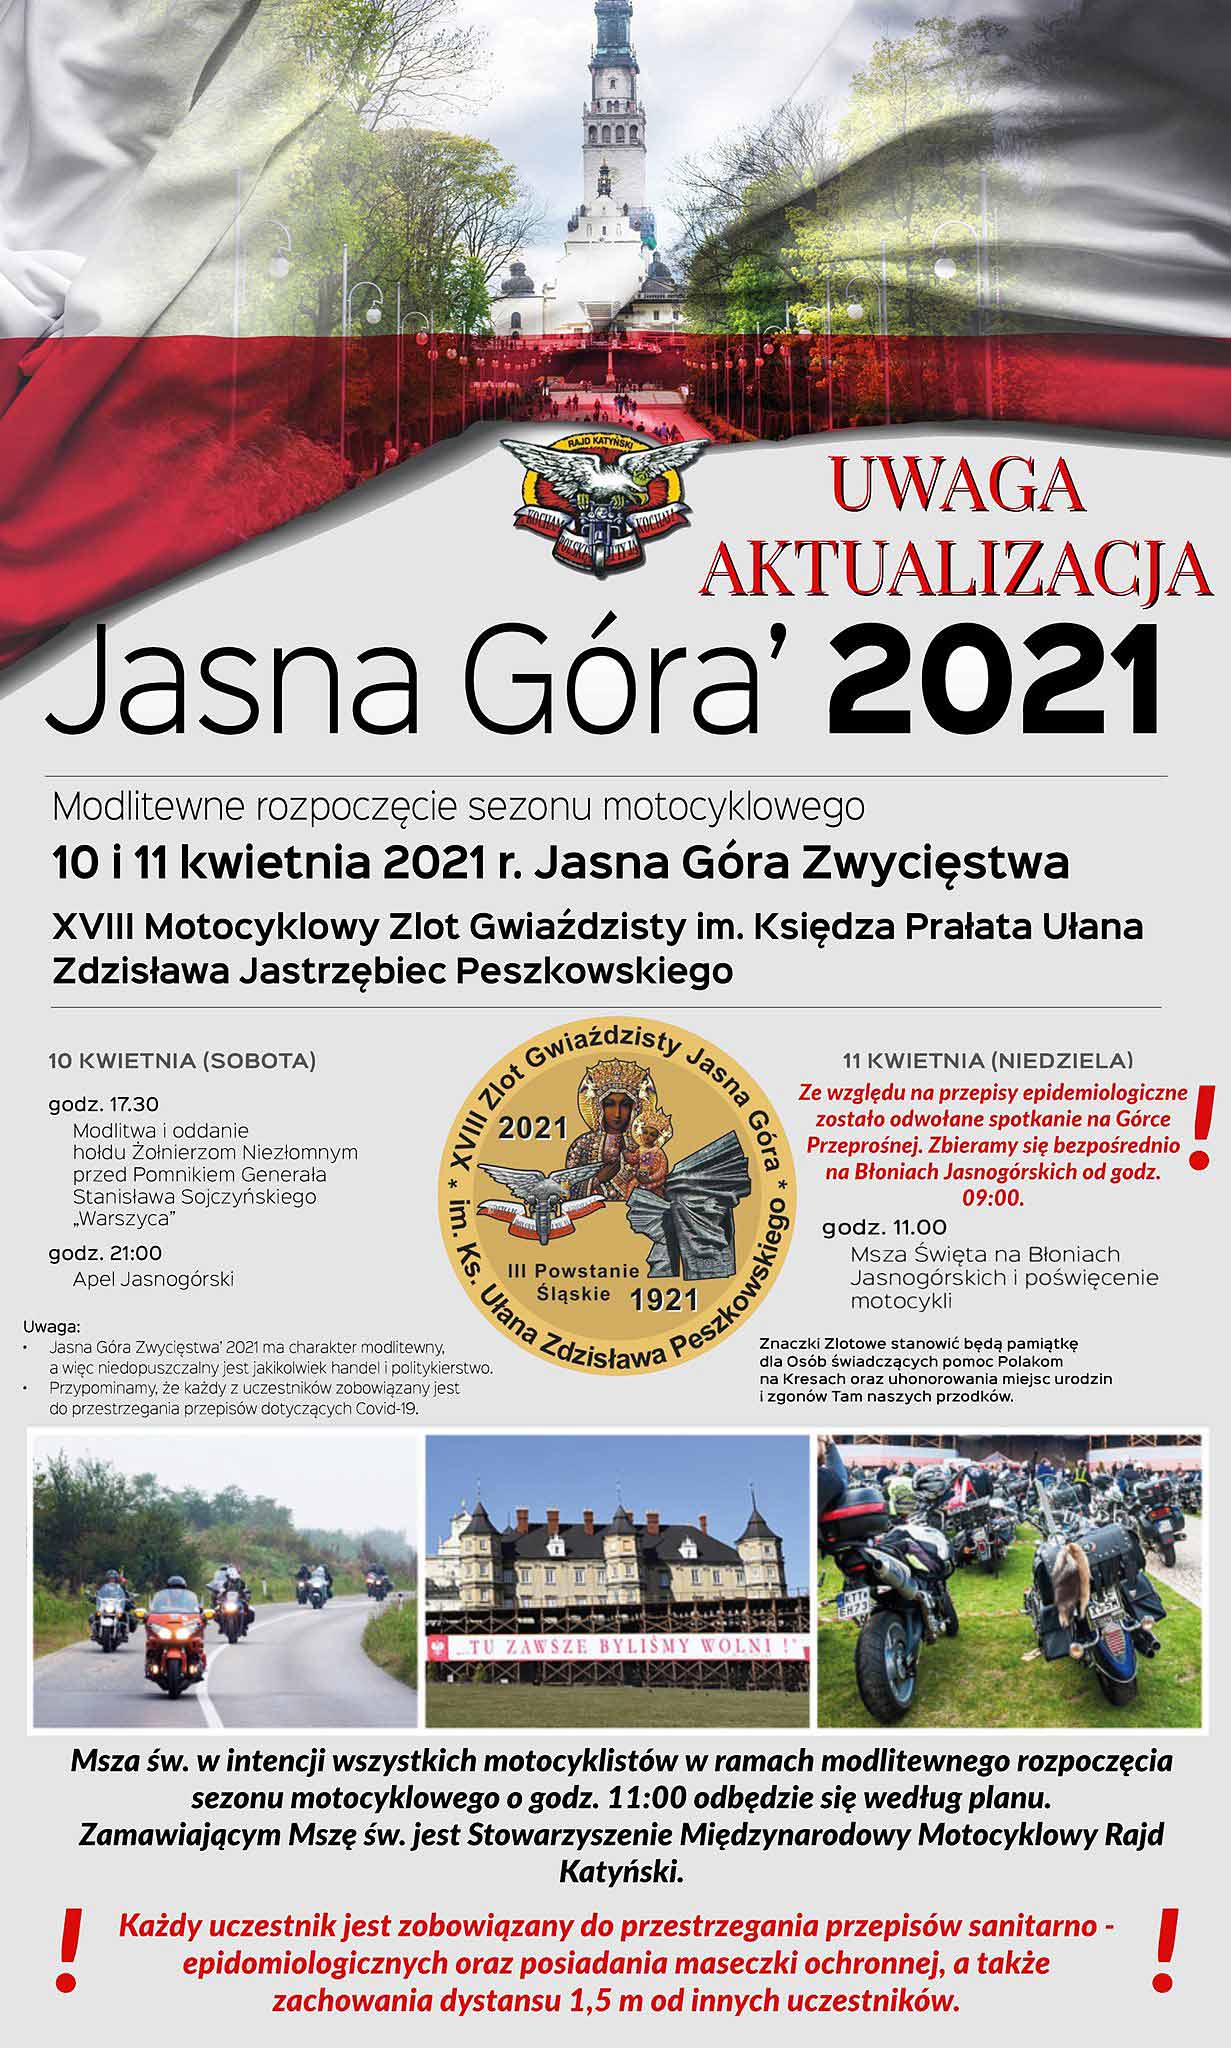 Zlot Gwiaździsty im. Ks. Ułana Zdzisława Peszkowskiego Jasna Góra 2021 - Częstochowa